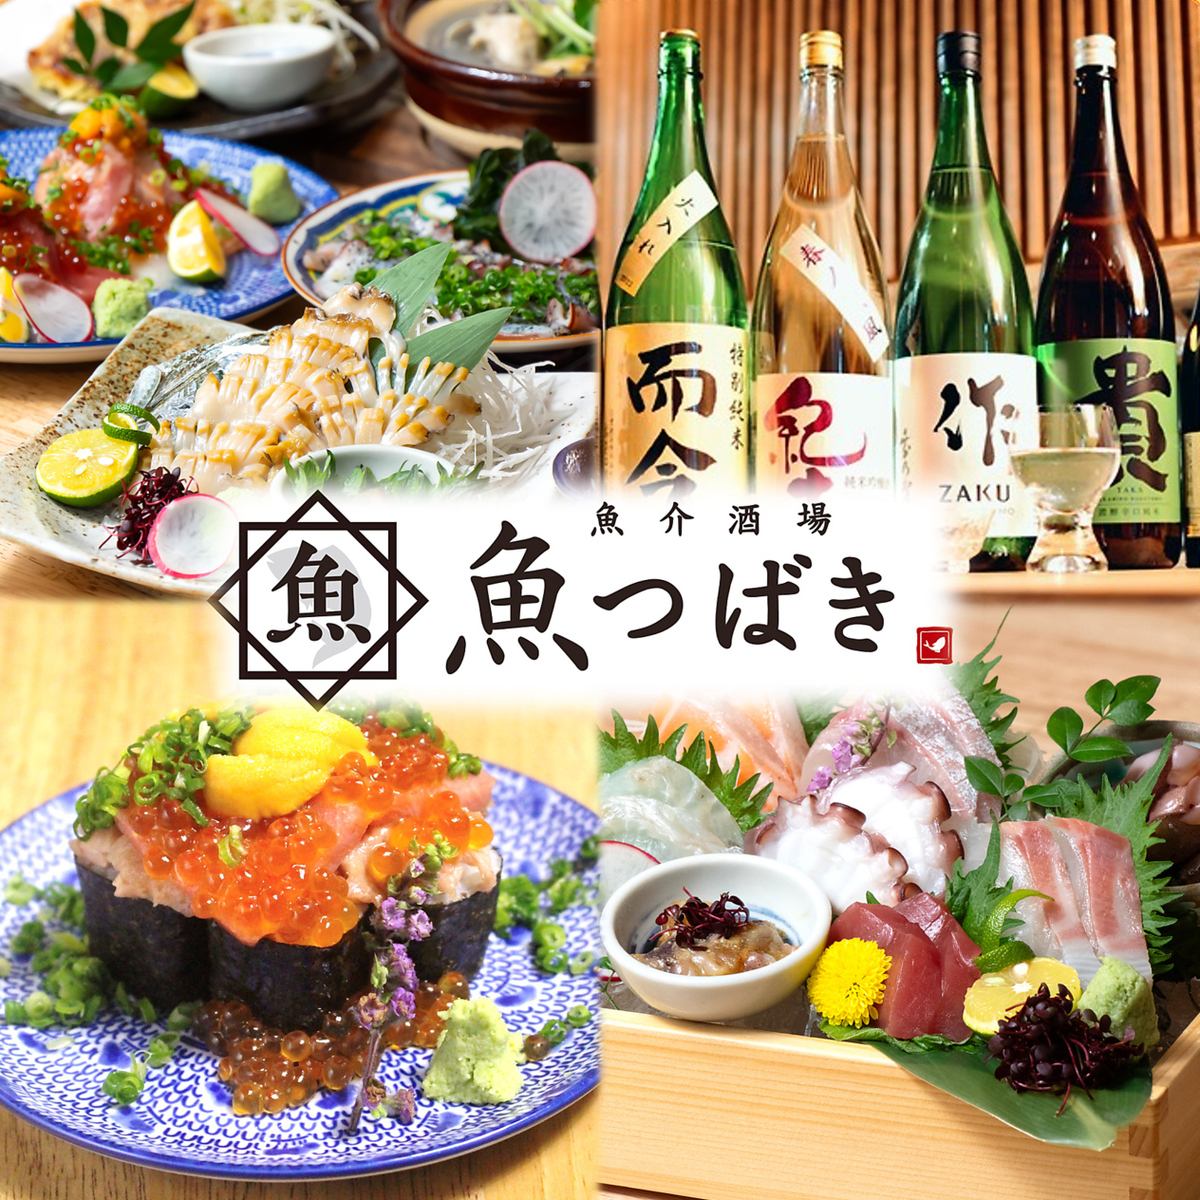 【역 치카】 맛있는 해물과 일본 술을 즐길 수있다! 8 종 모듬 1078 엔은 지역 최저?